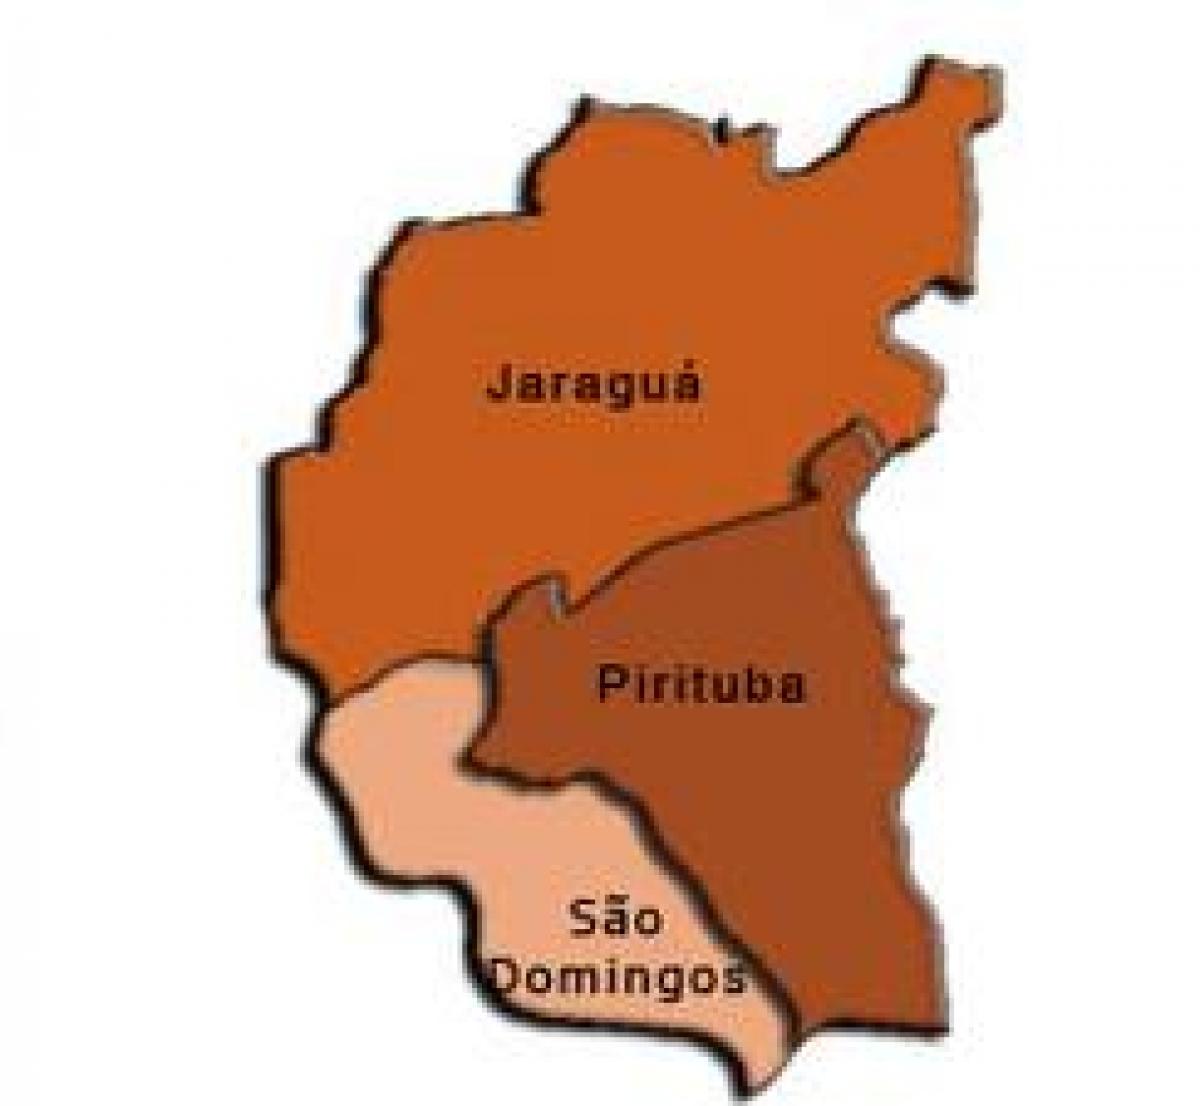 نقشہ کے Pirituba-Jaraguá ذیلی صوبے